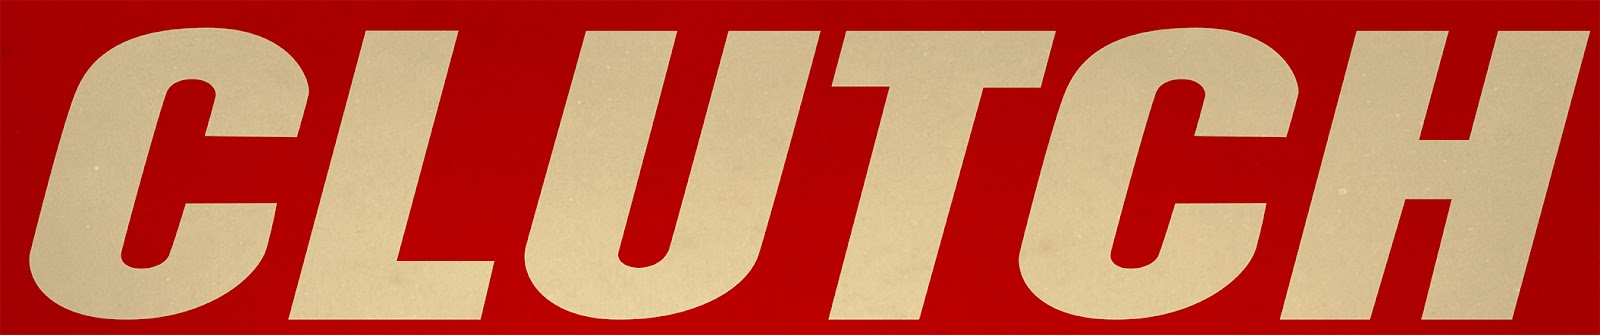 clutch logo1.jpg